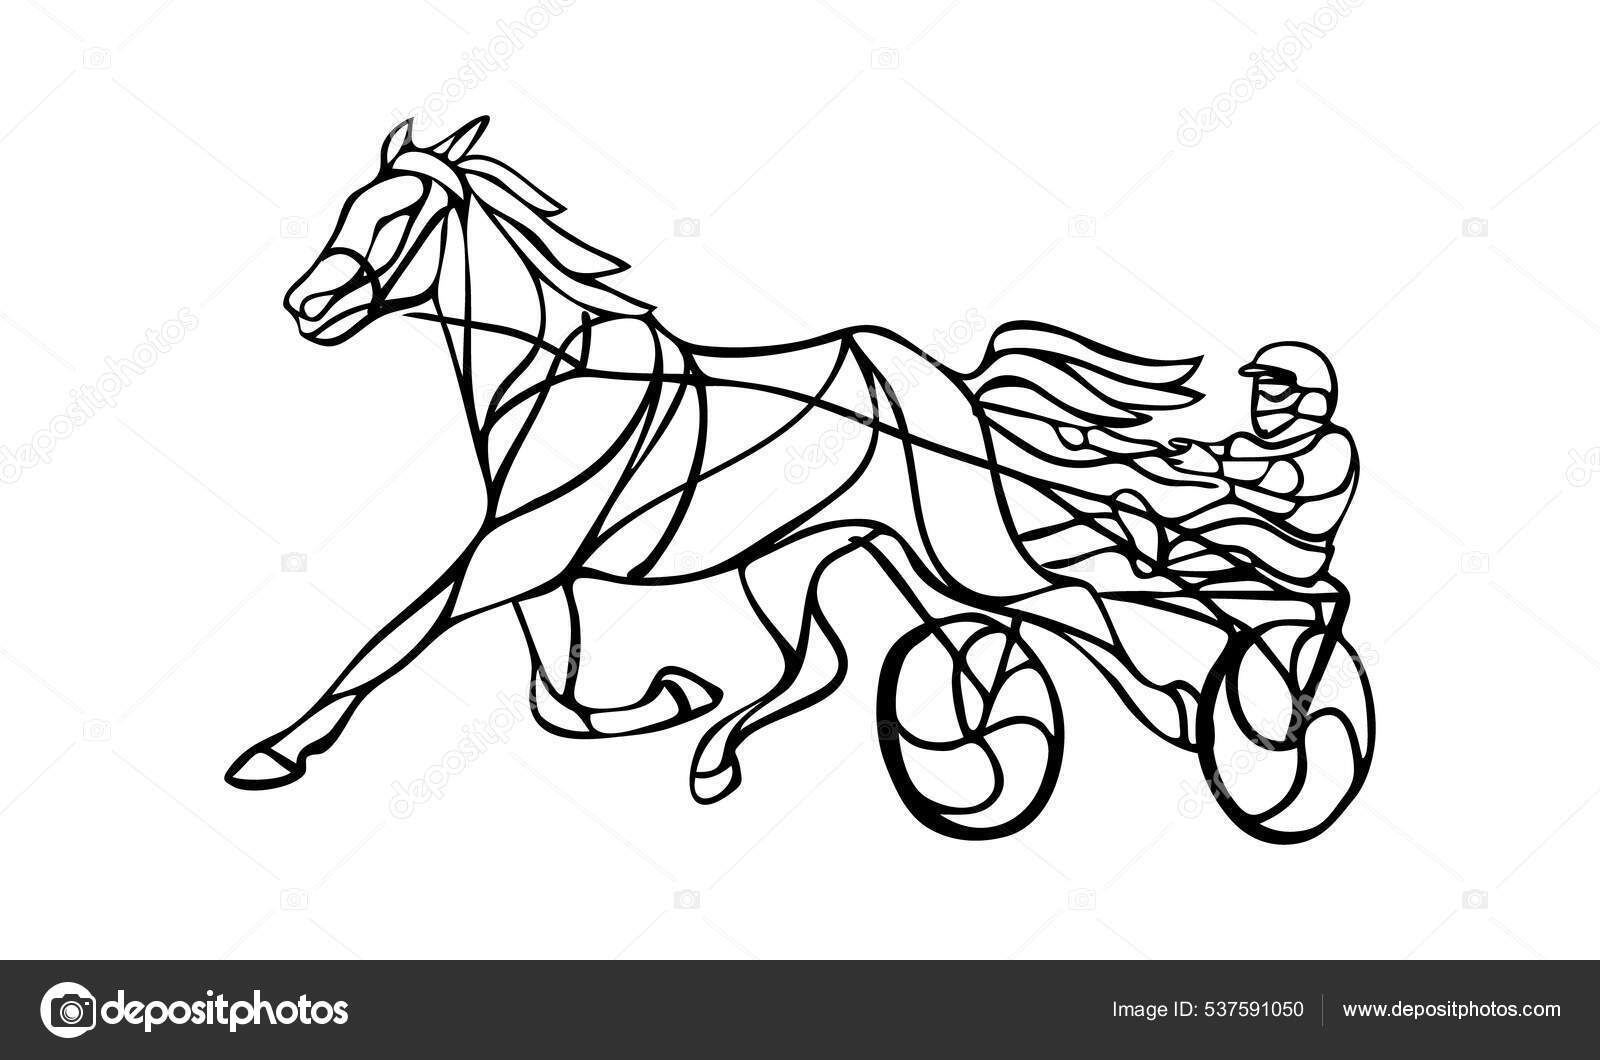 Corrida de cavalos 2D - Jogo Corrida de cavalos 2D grátis